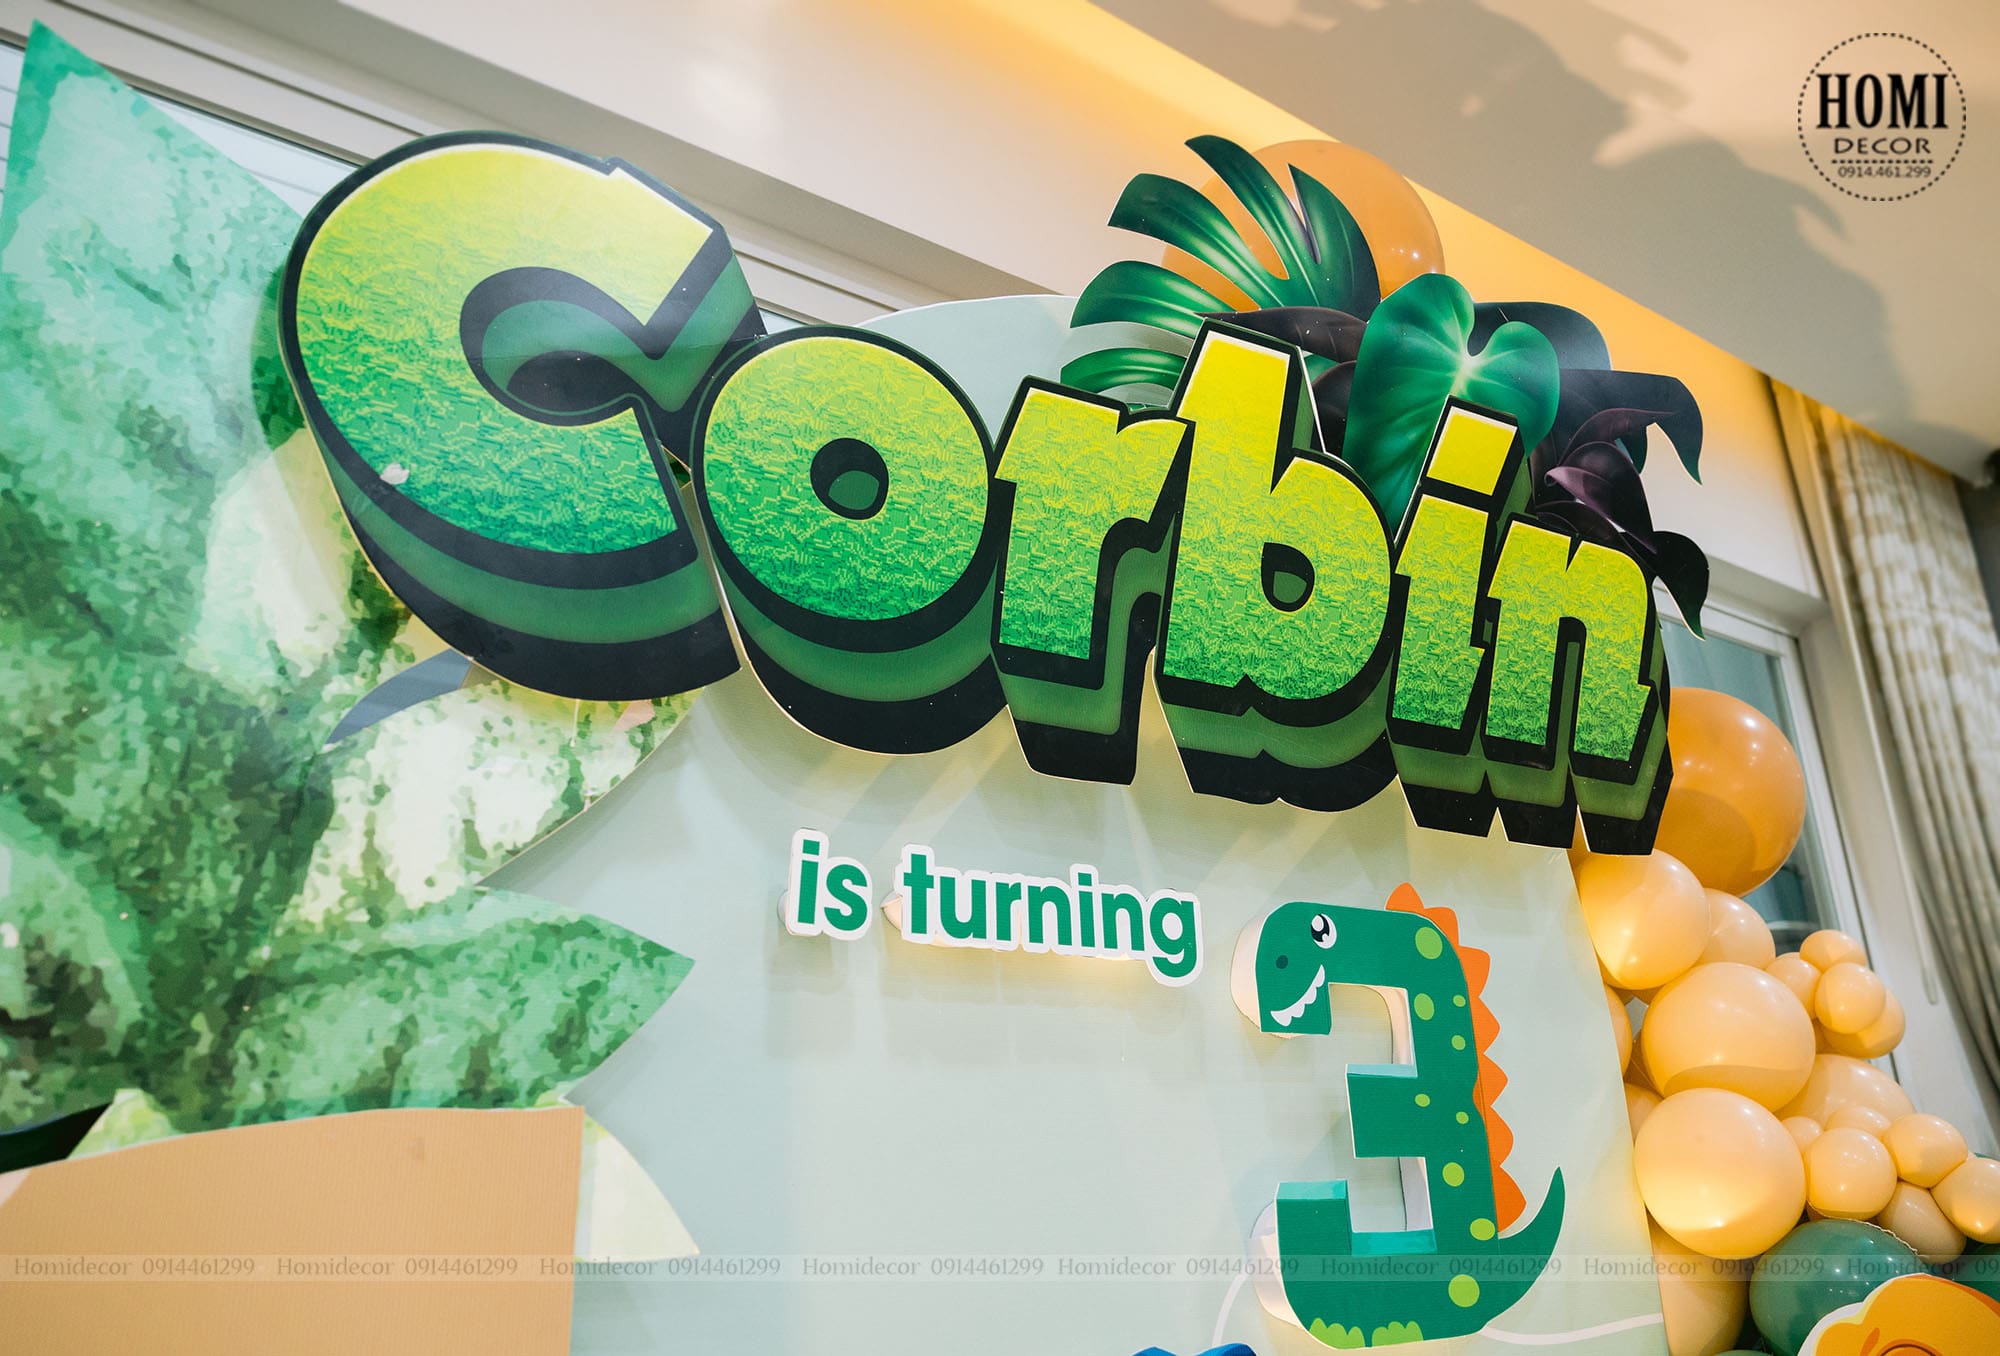 Trang trí sinh nhật Corbin chủ đề khủng long